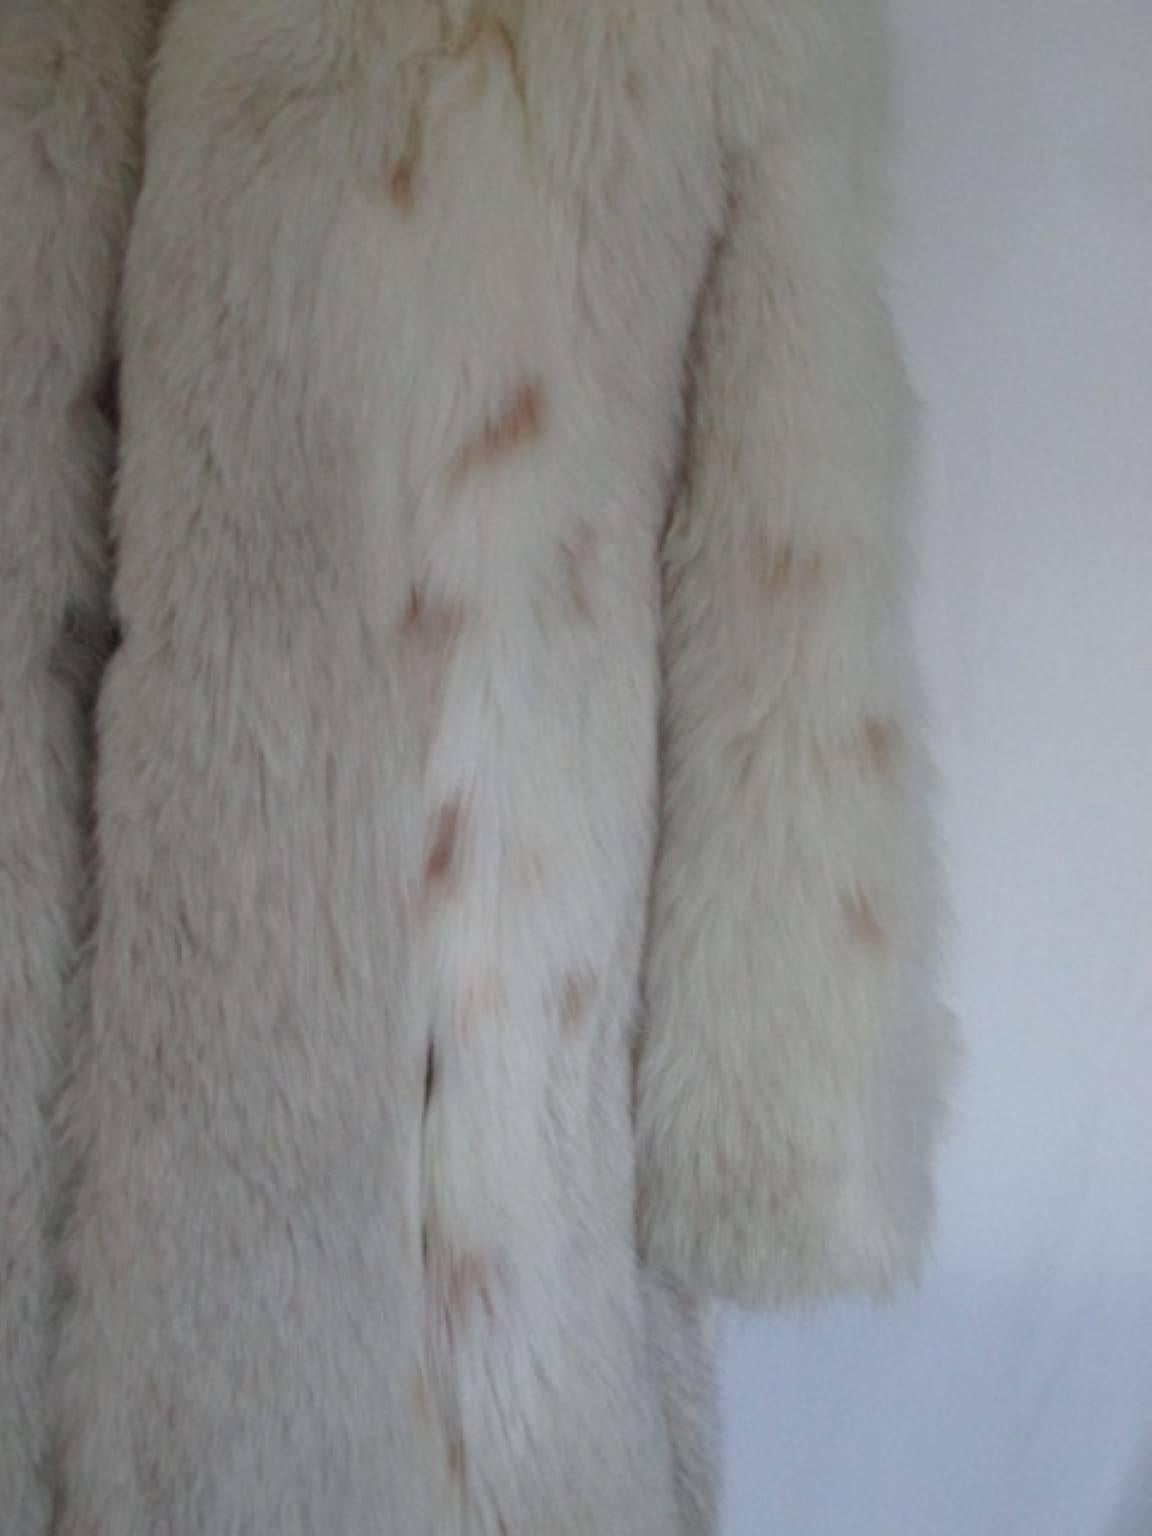 off white fur coat